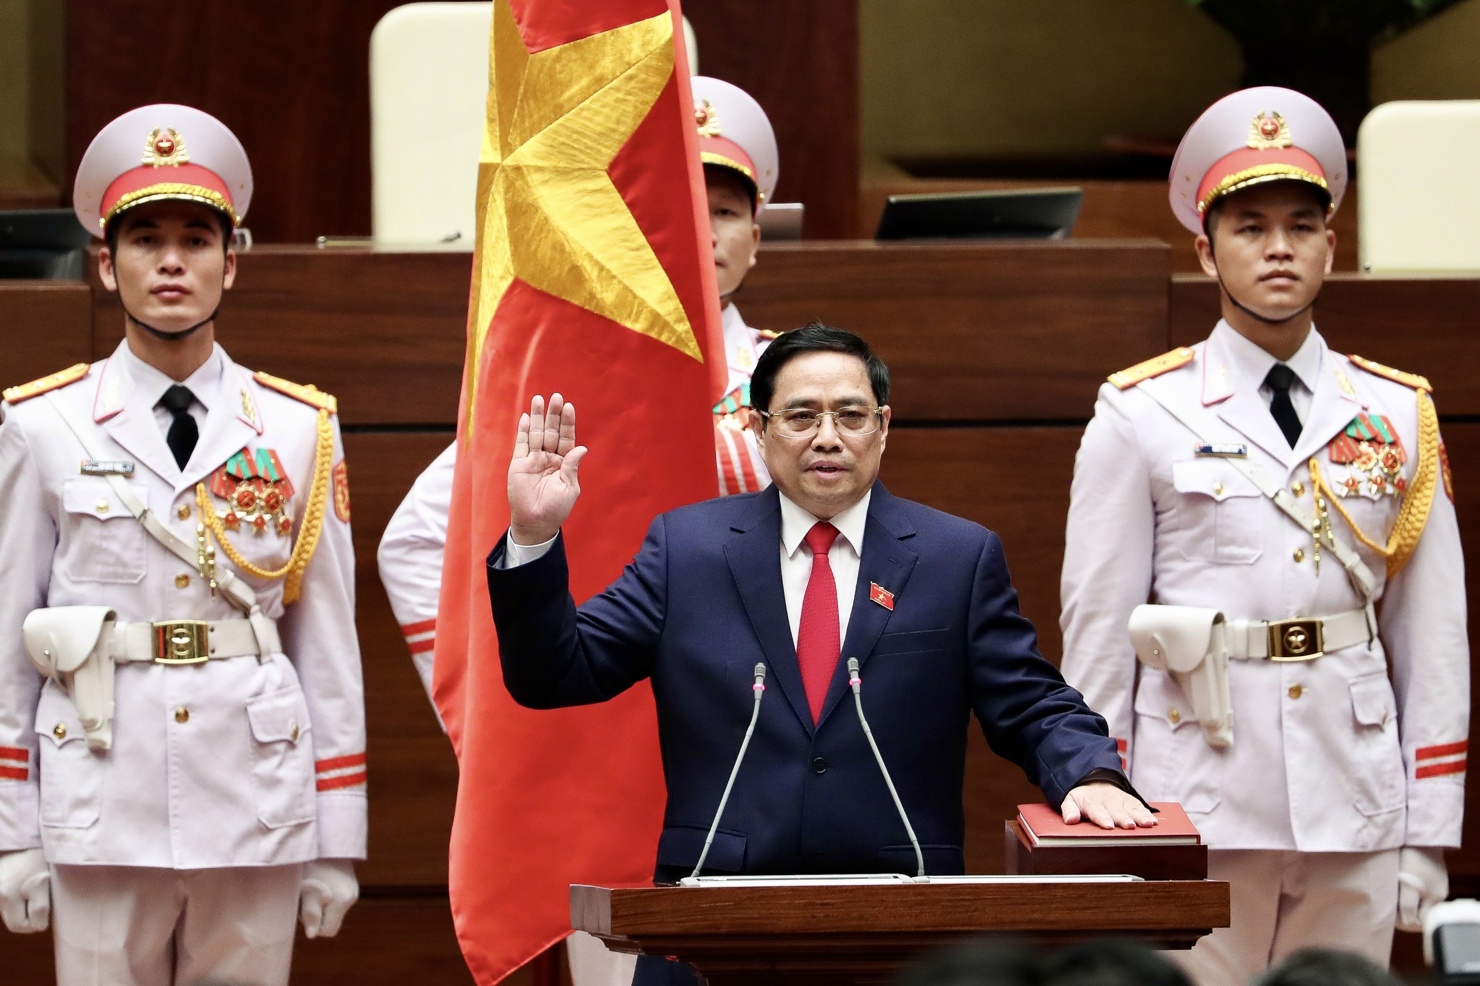 Quốc hội bầu ông Phạm Minh Chính, Ủy viên Bộ Chính trị, Thủ tướng Chính phủ nhiệm kỳ 2016-2021, giữ chức Thủ tướng Chính phủ nhiệm kỳ 2021-2026.